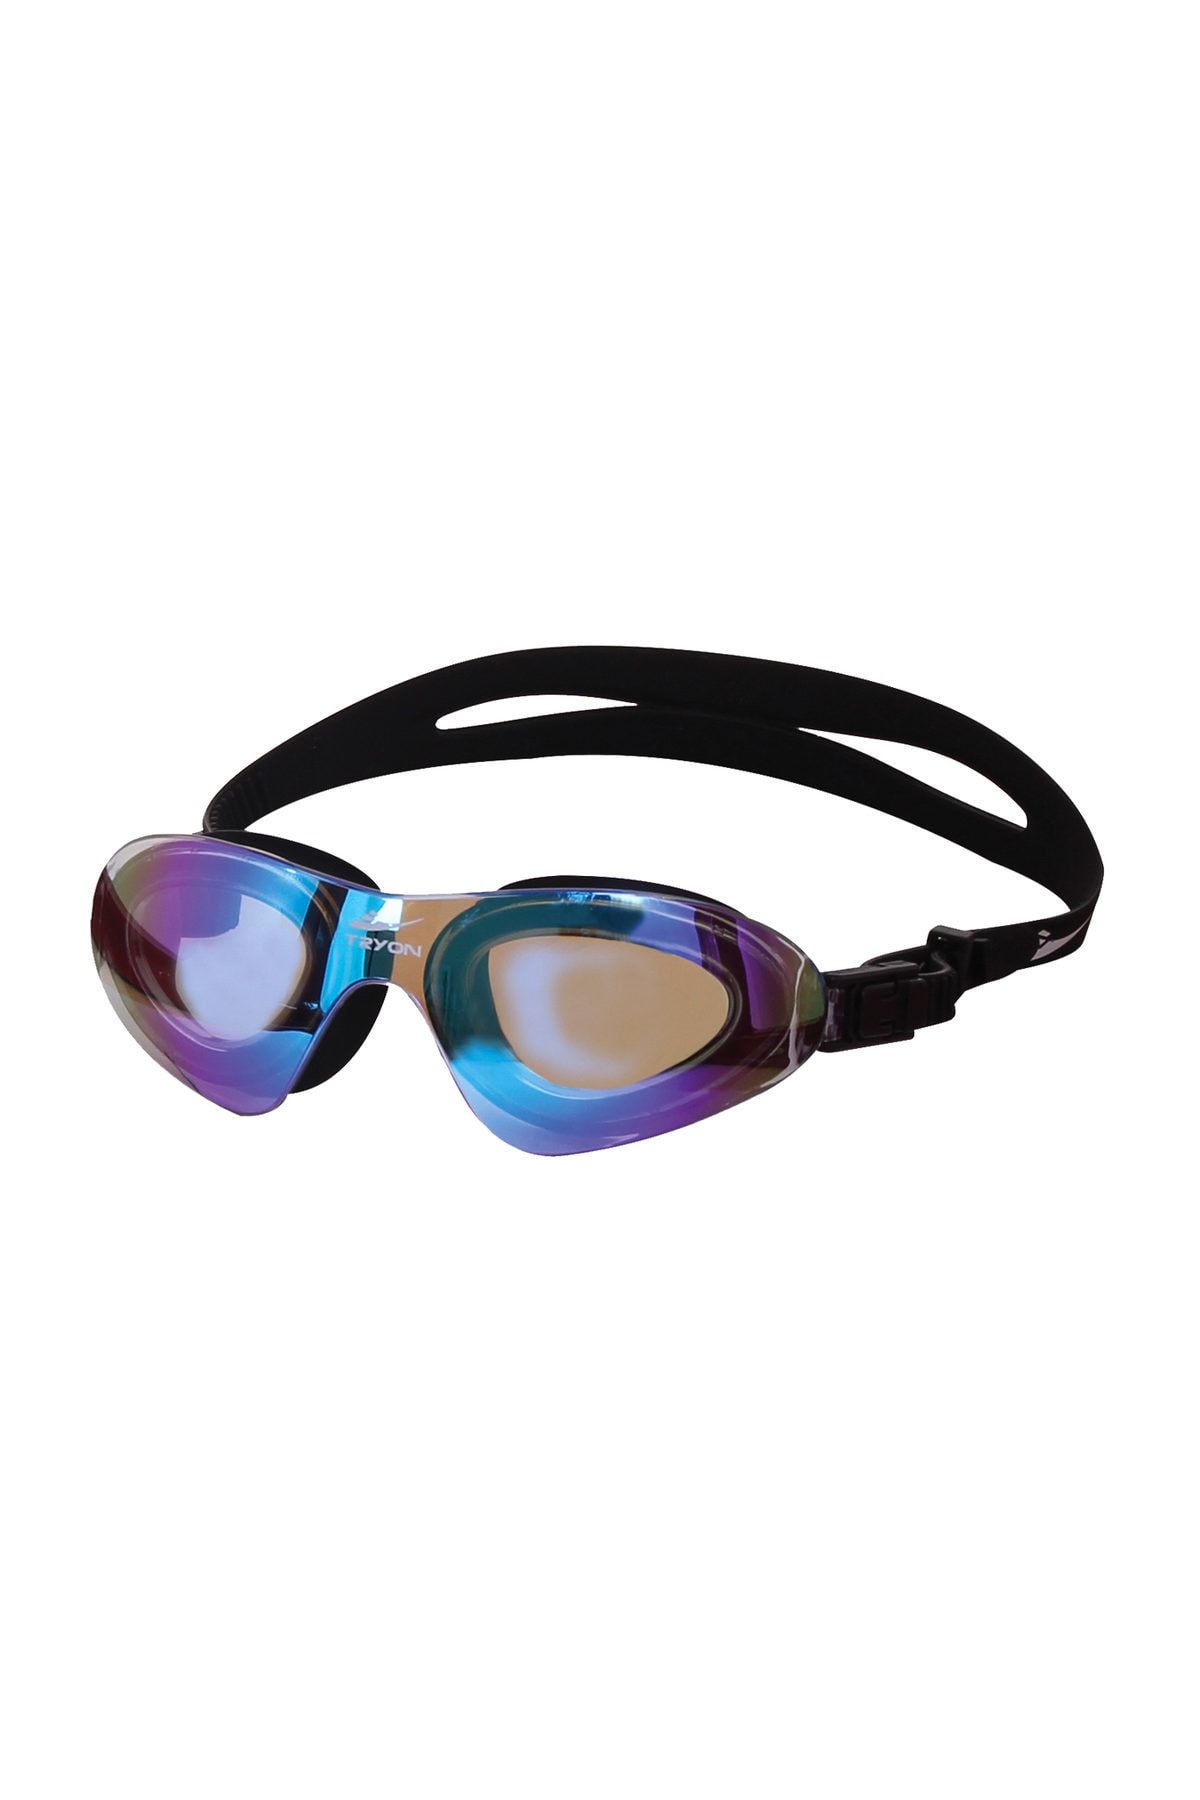 TRYON Yüzücü Gözlüğü Yg-3400